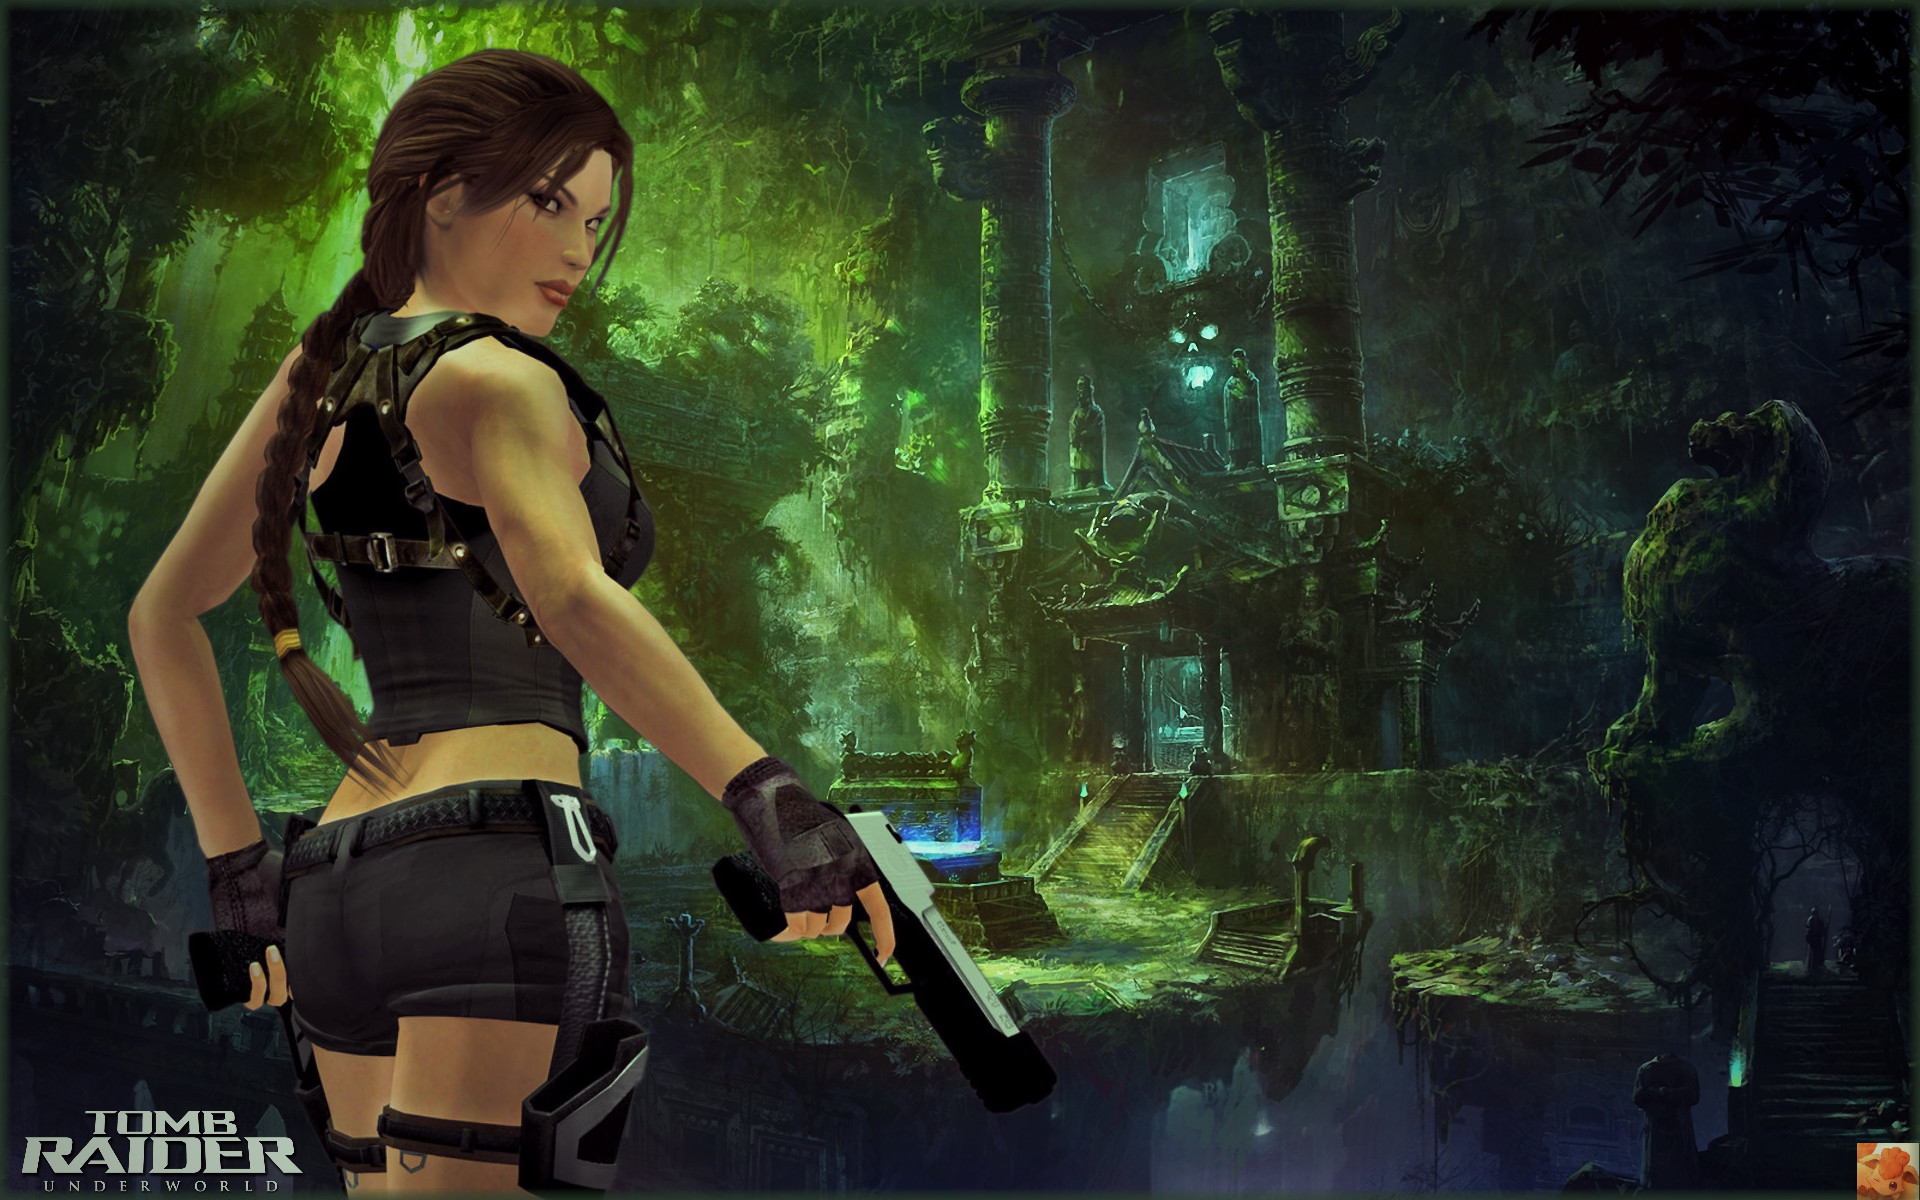 fondo de pantalla de tomb raider underworld,juego de acción y aventura,juego de pc,cg artwork,composición digital,captura de pantalla